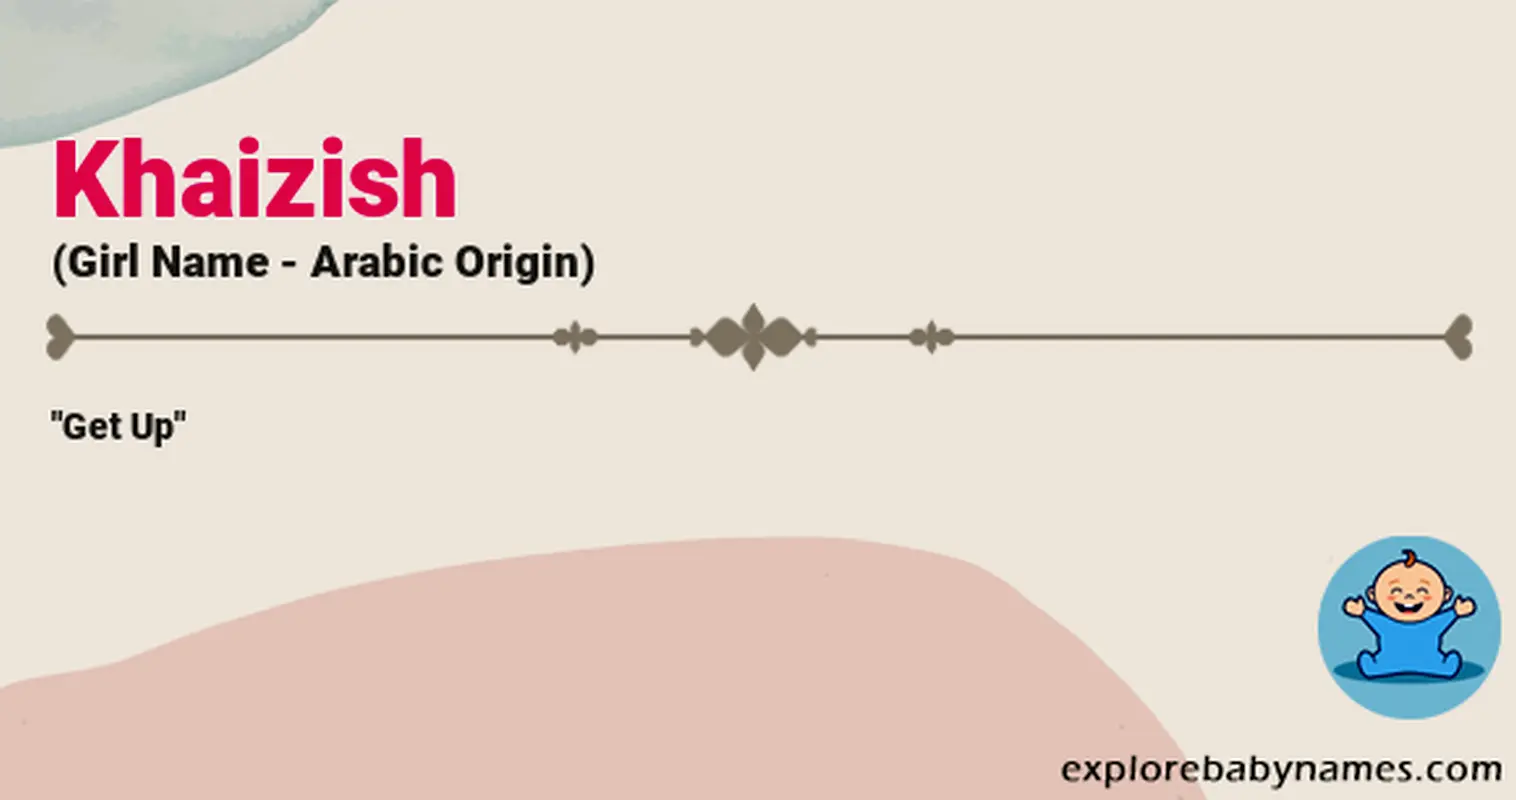 Meaning of Khaizish